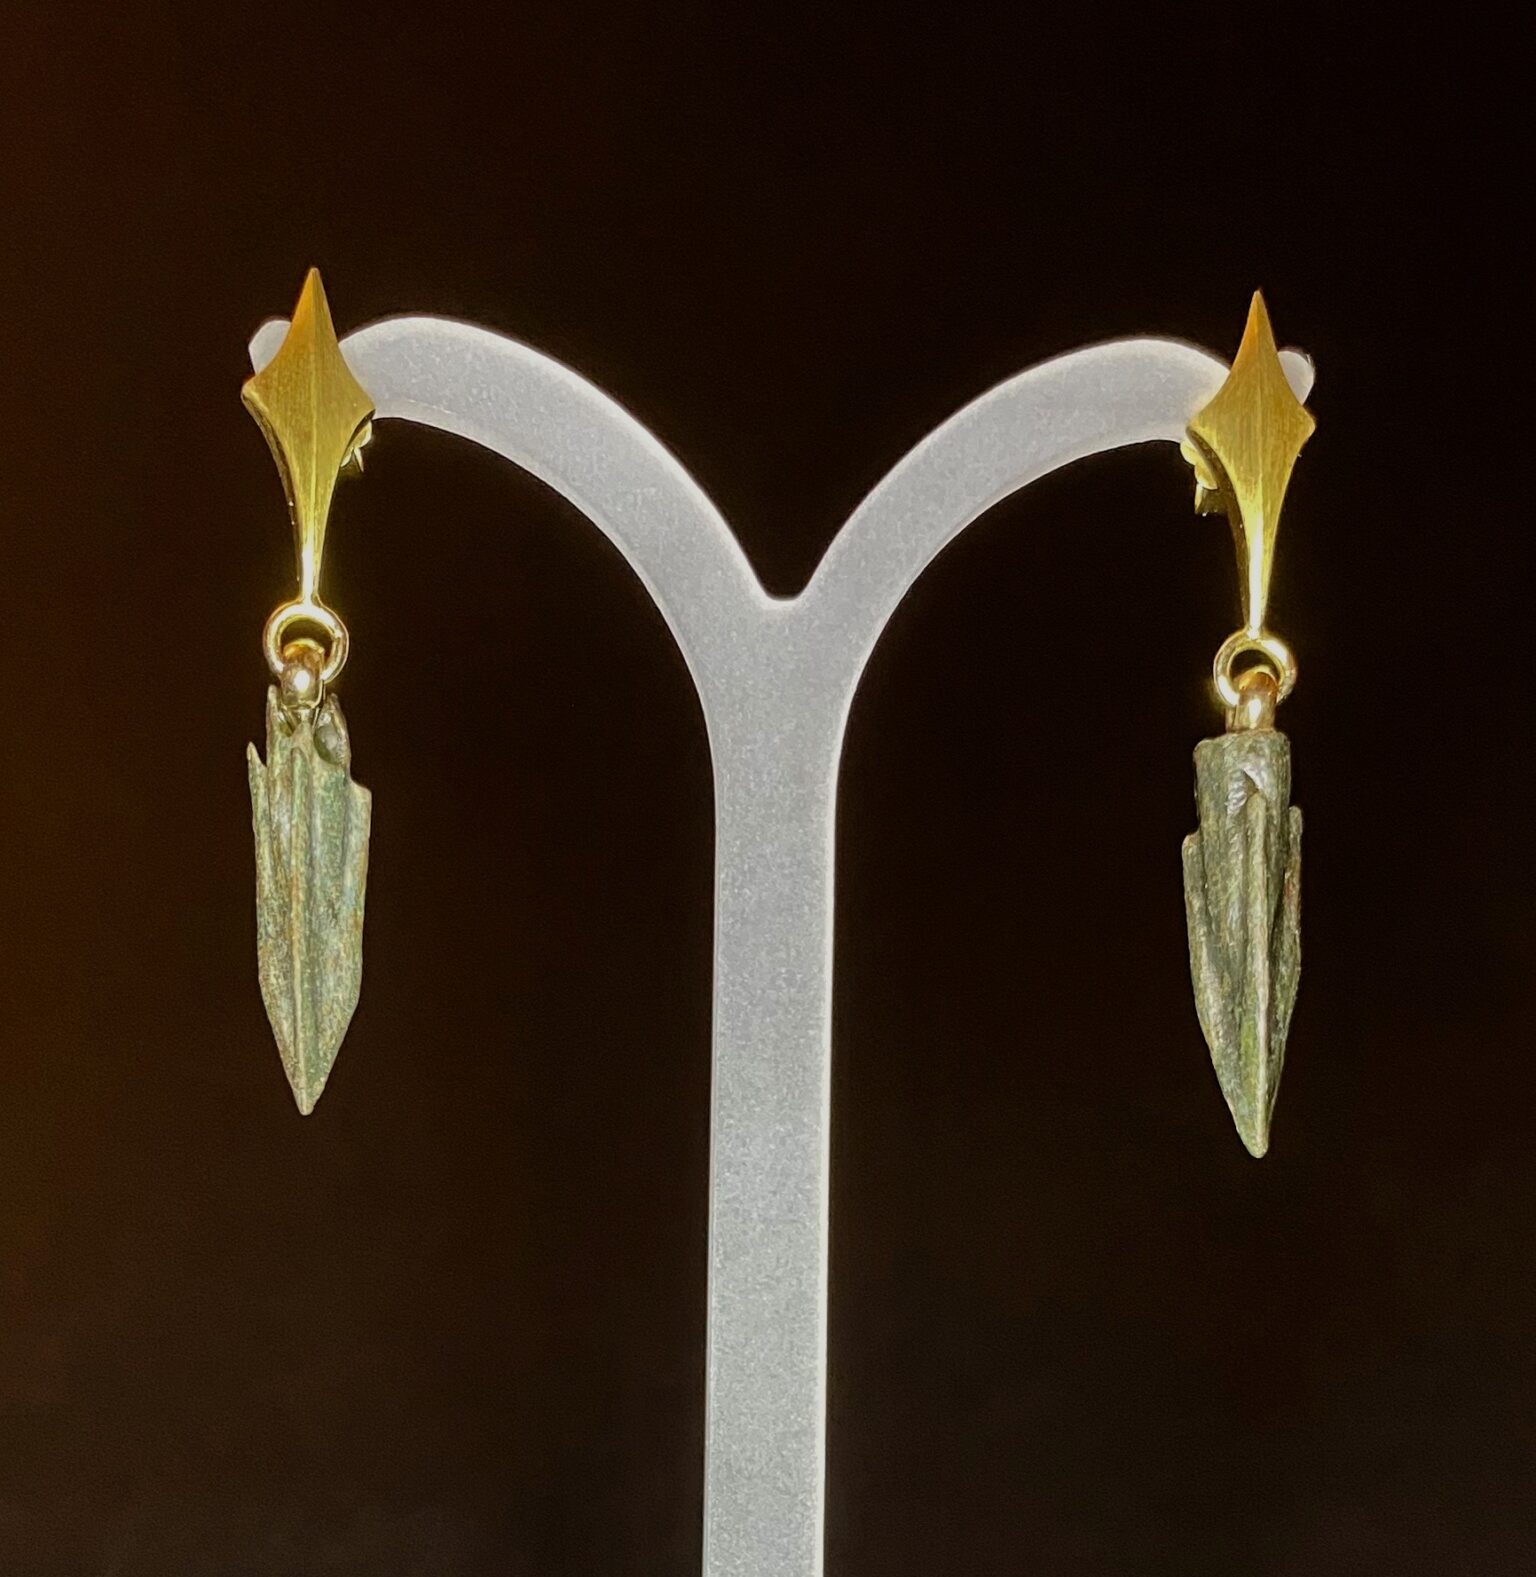 A Pair of Arrowhead Earrings